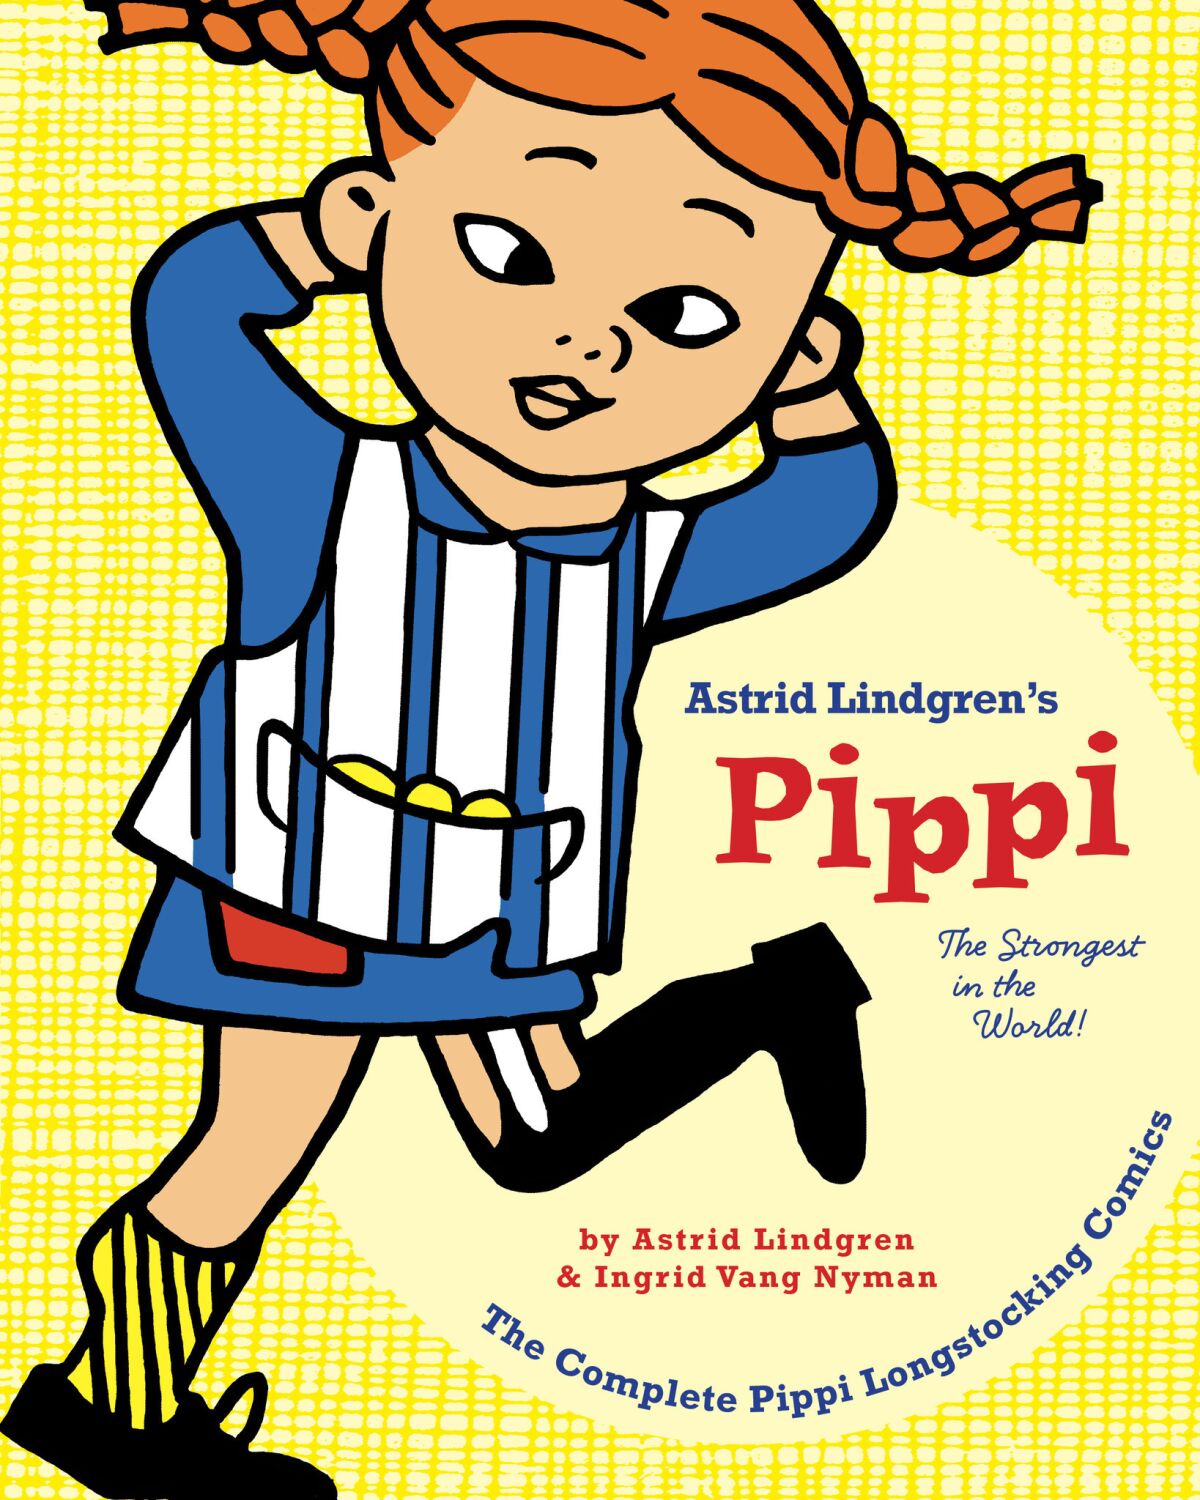 "Pippi Longstocking: The Strongest Girl in the World" by Astrid Lindgren